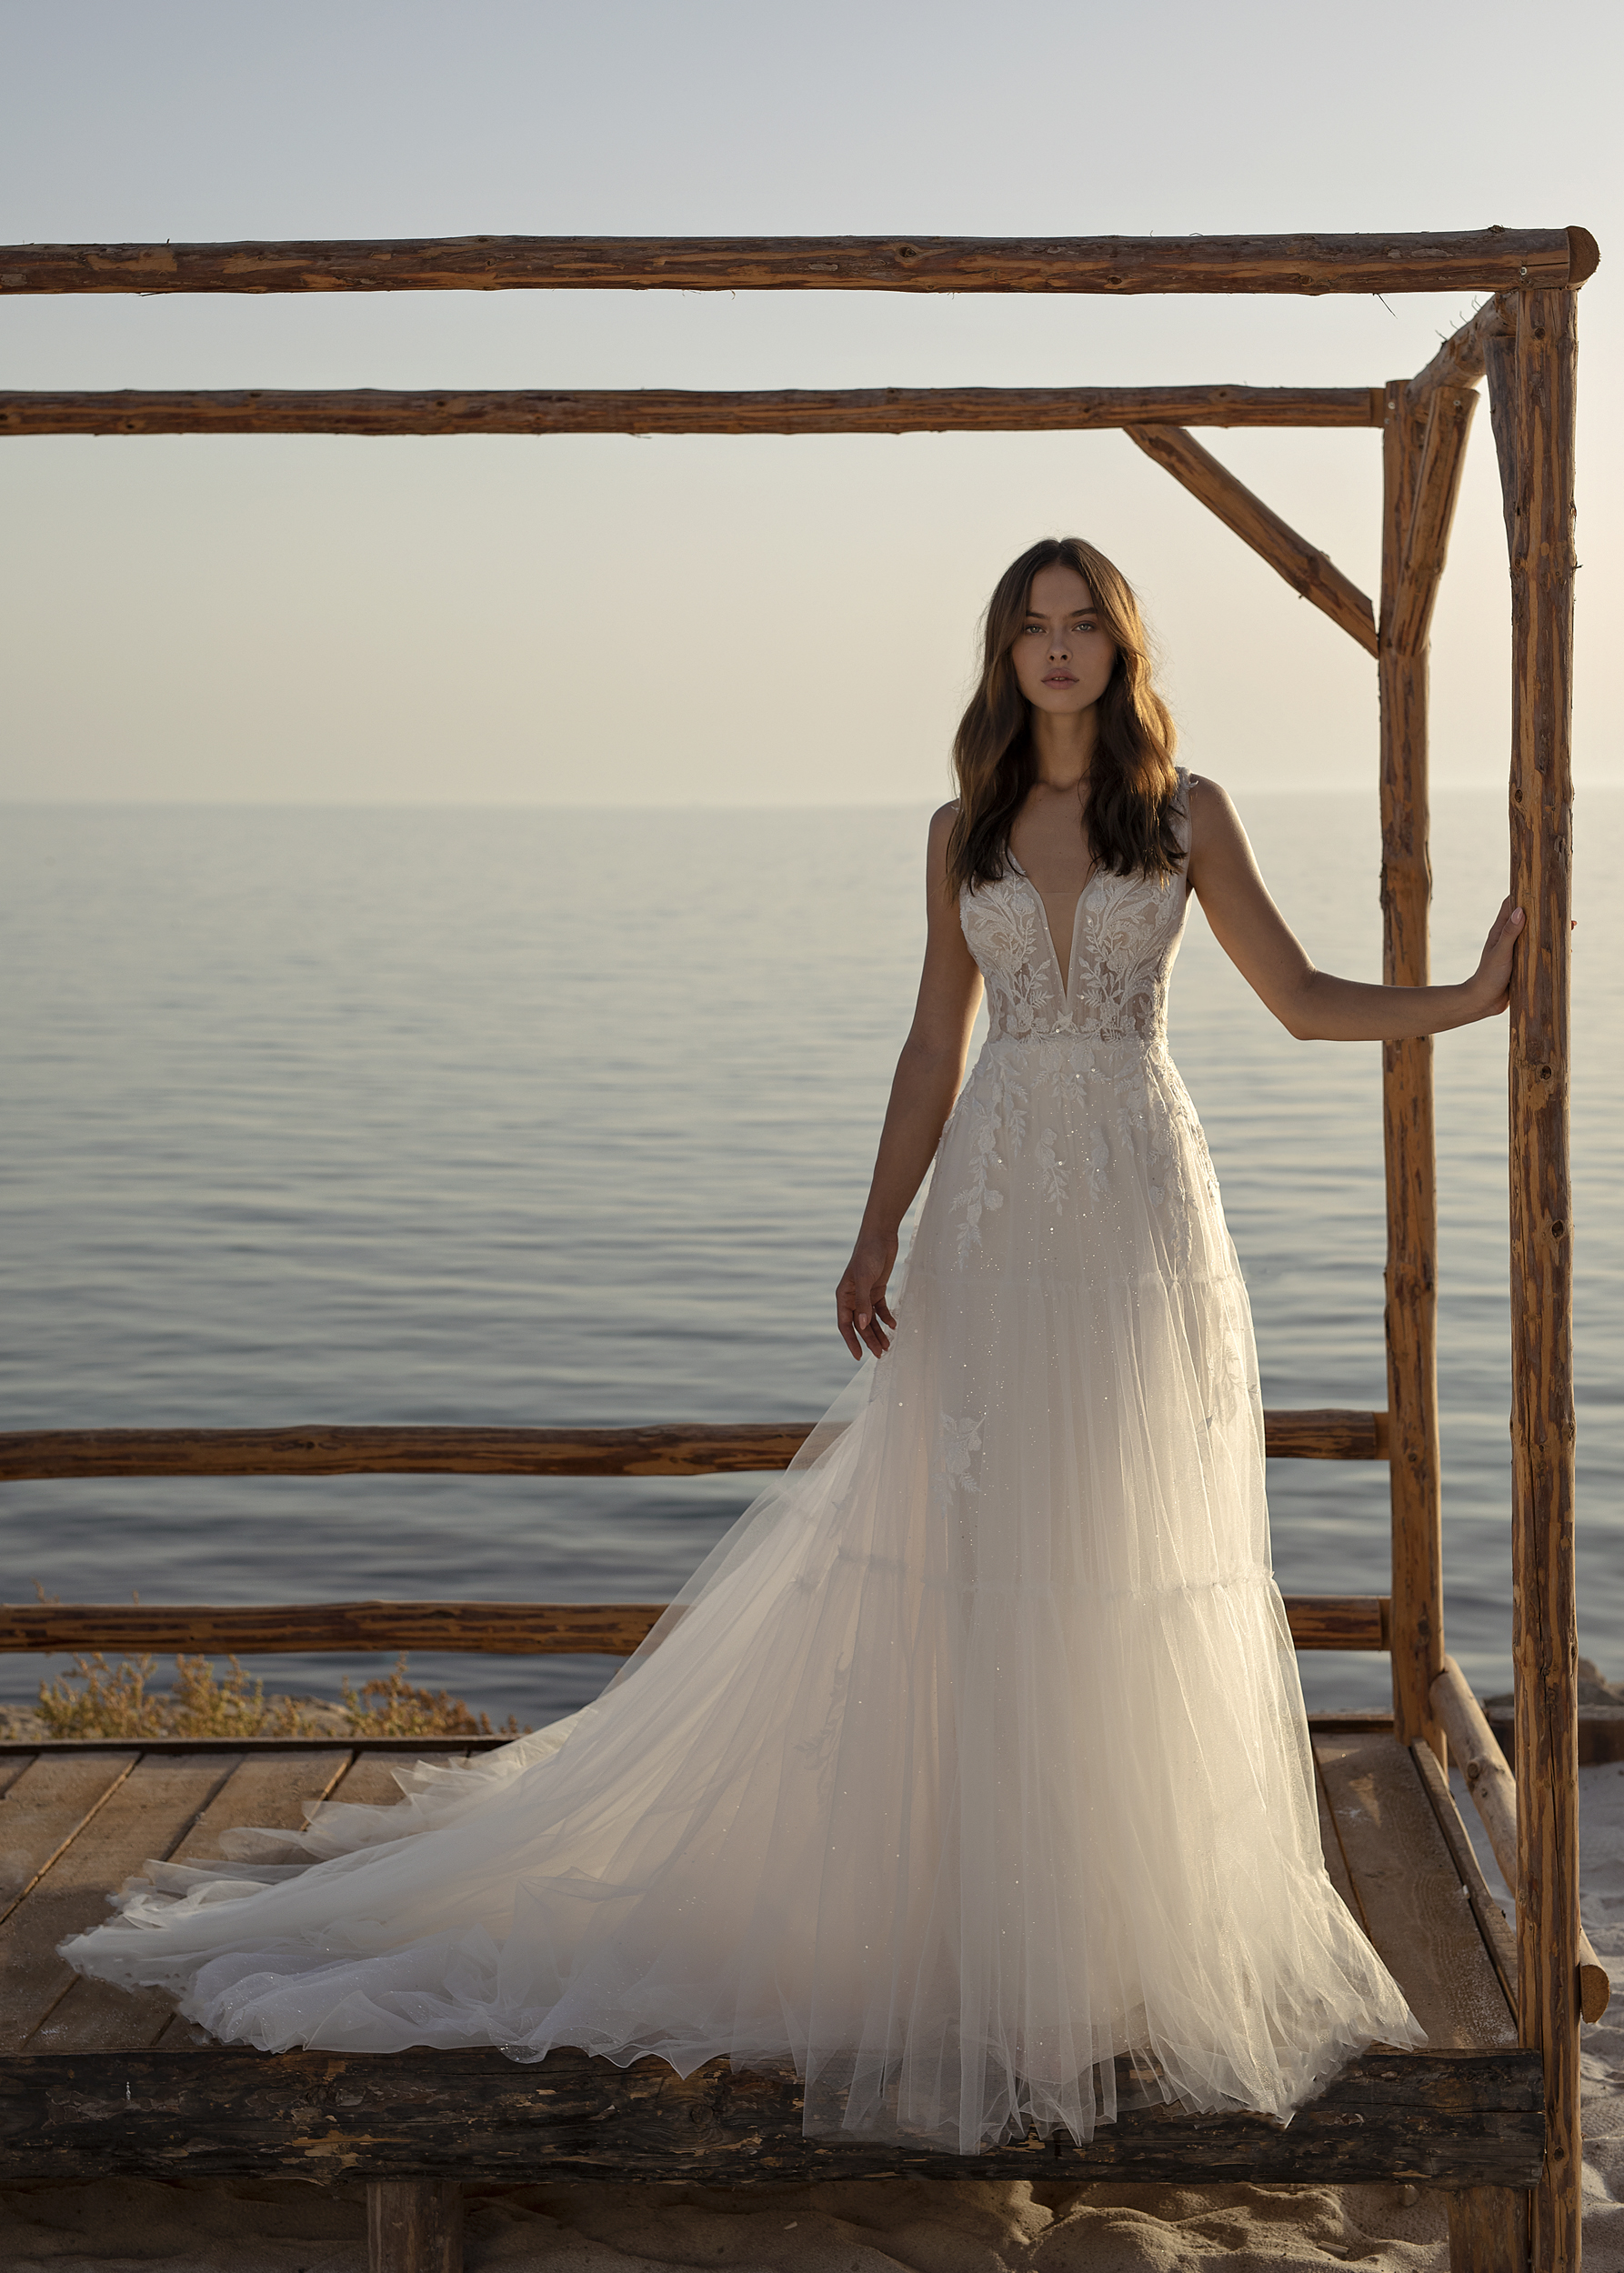 Orabella wedding dress by Modeca